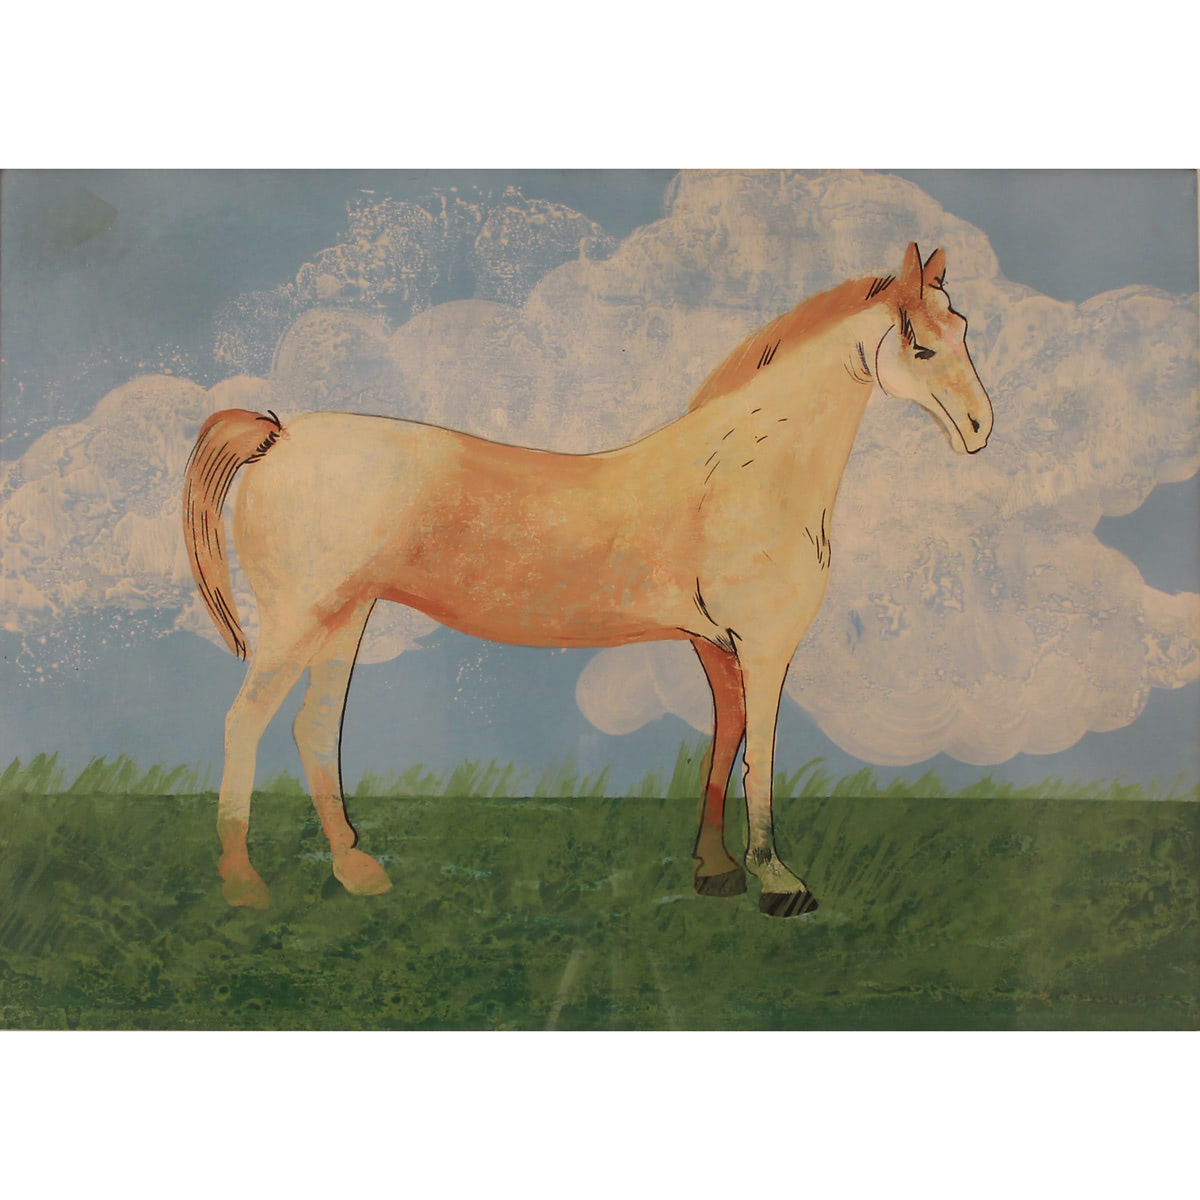 Francesca Di Carpinello (1929/2019) "Cavallino di campagna" - "Country horse"